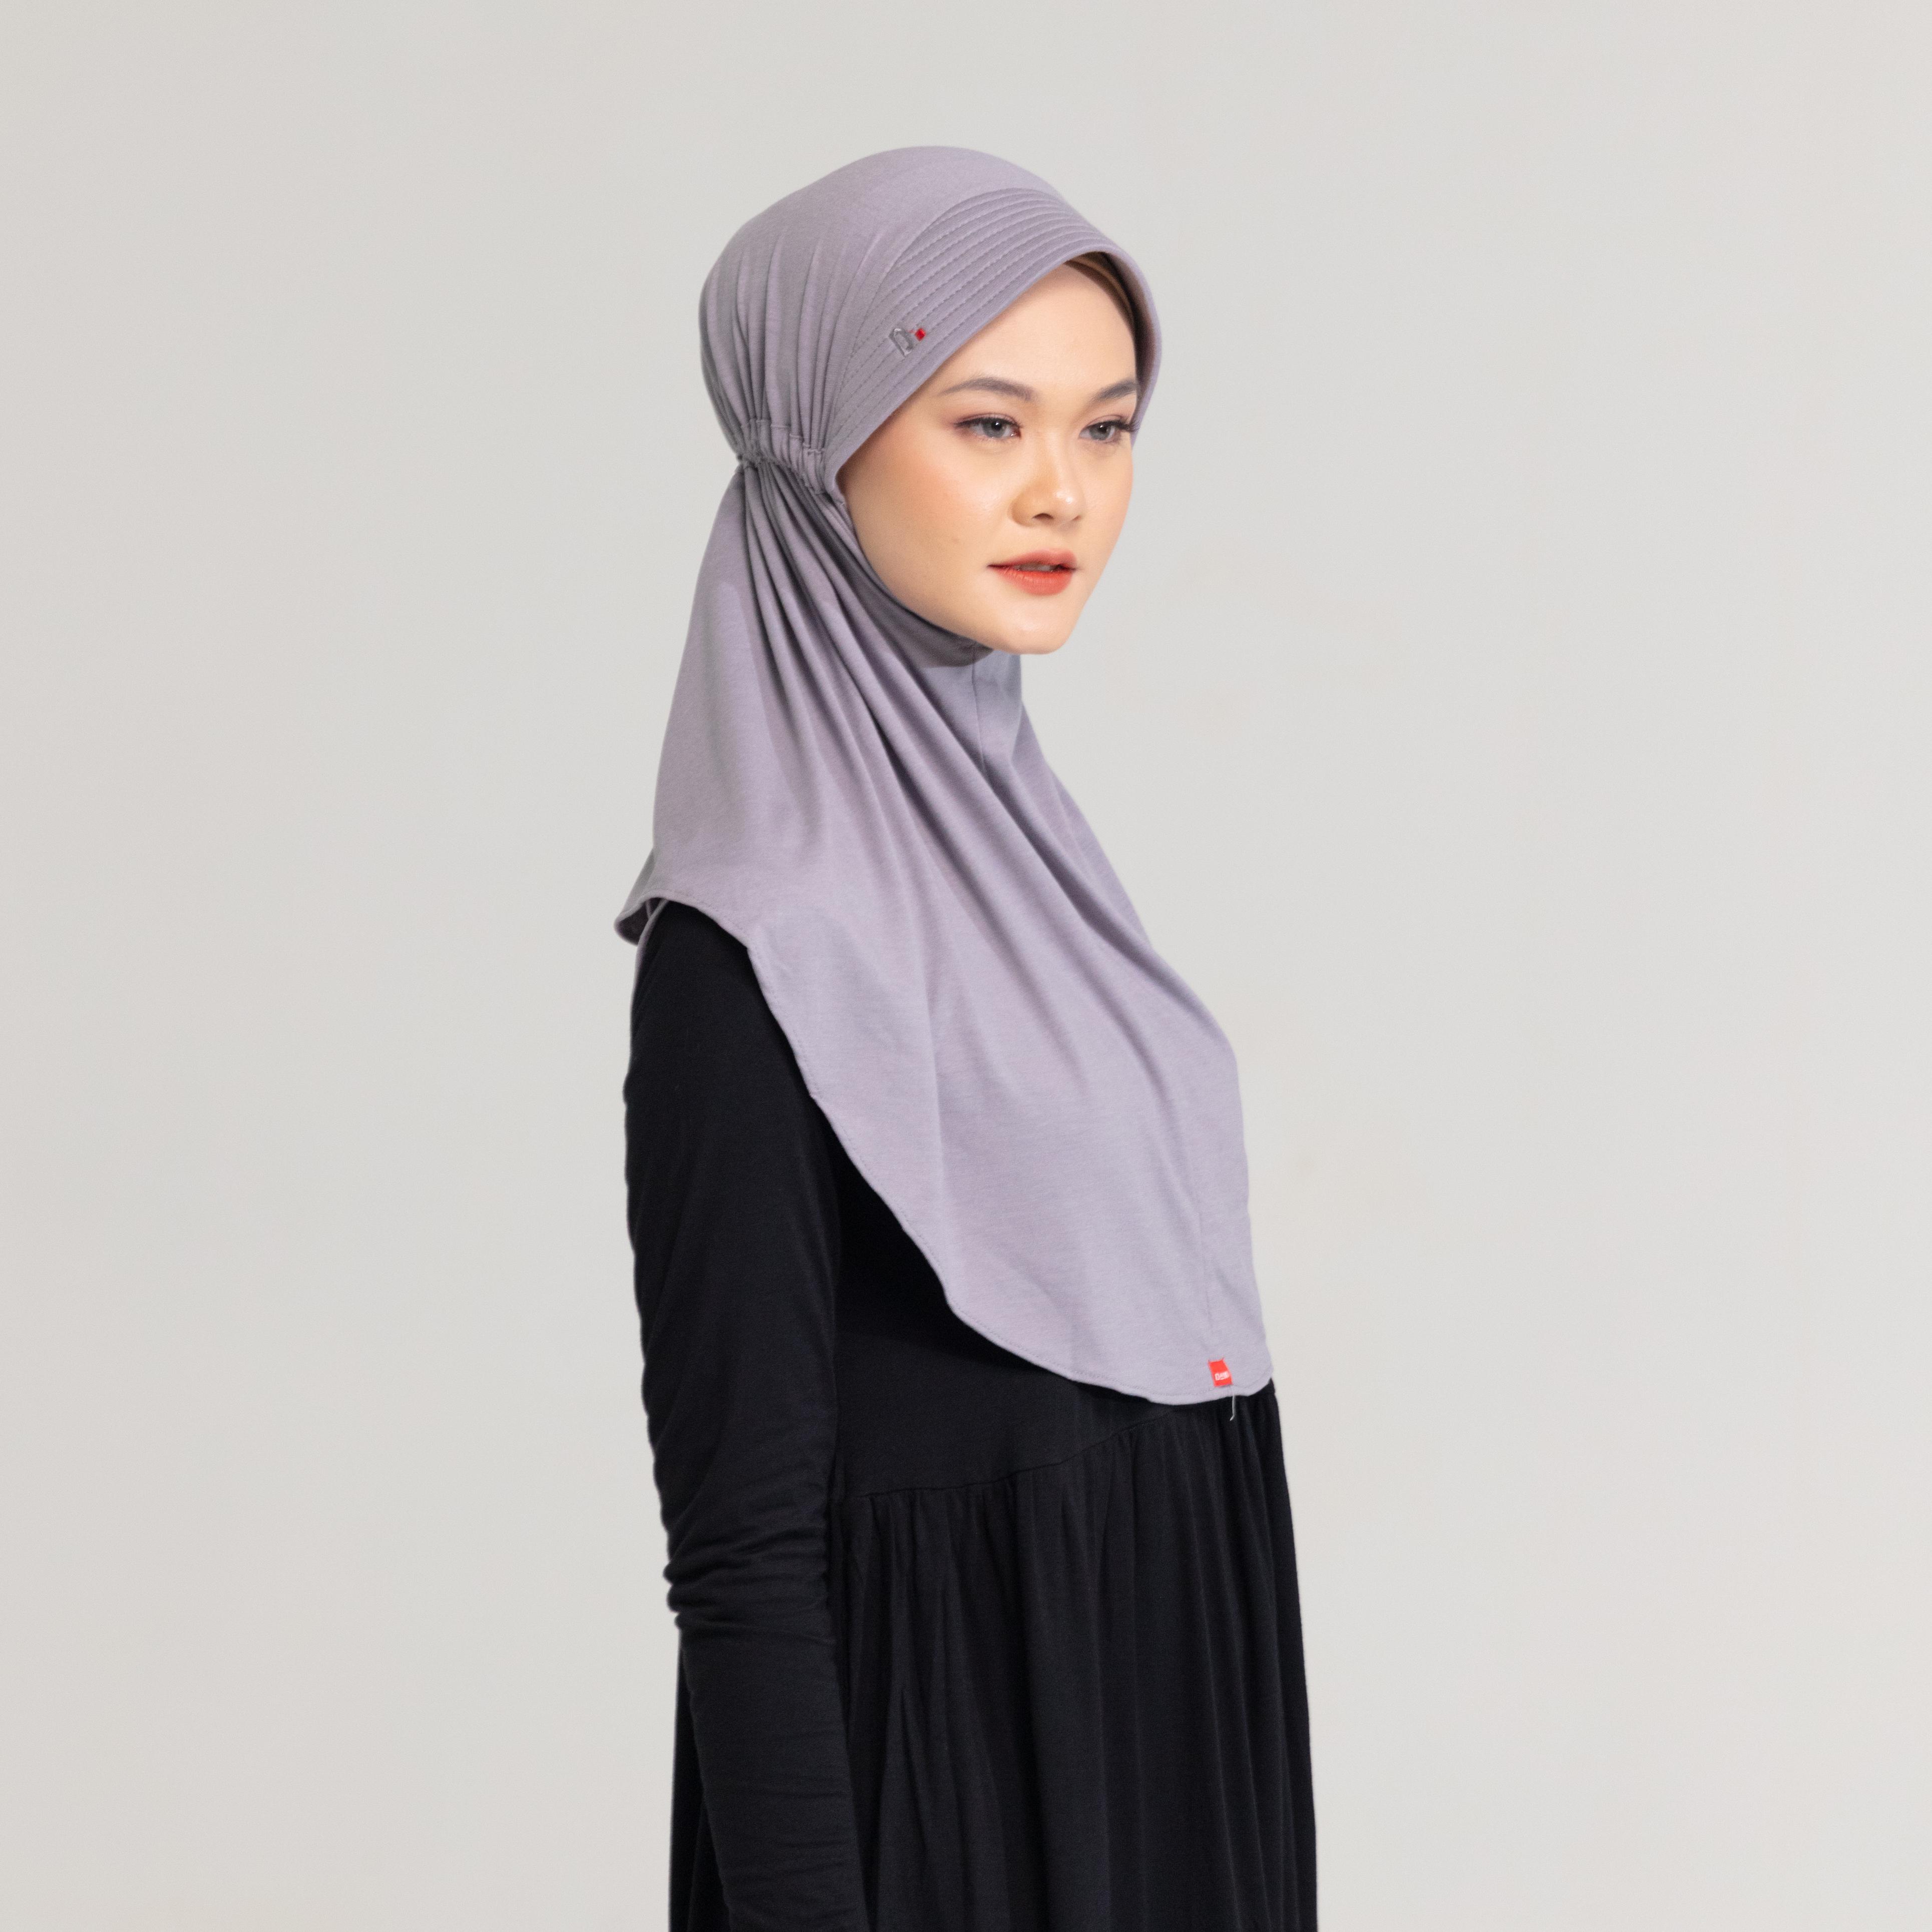 DAUKY -  Hijab Bergo Jilbab Basic Polos Kaos Rara - Abu Muda